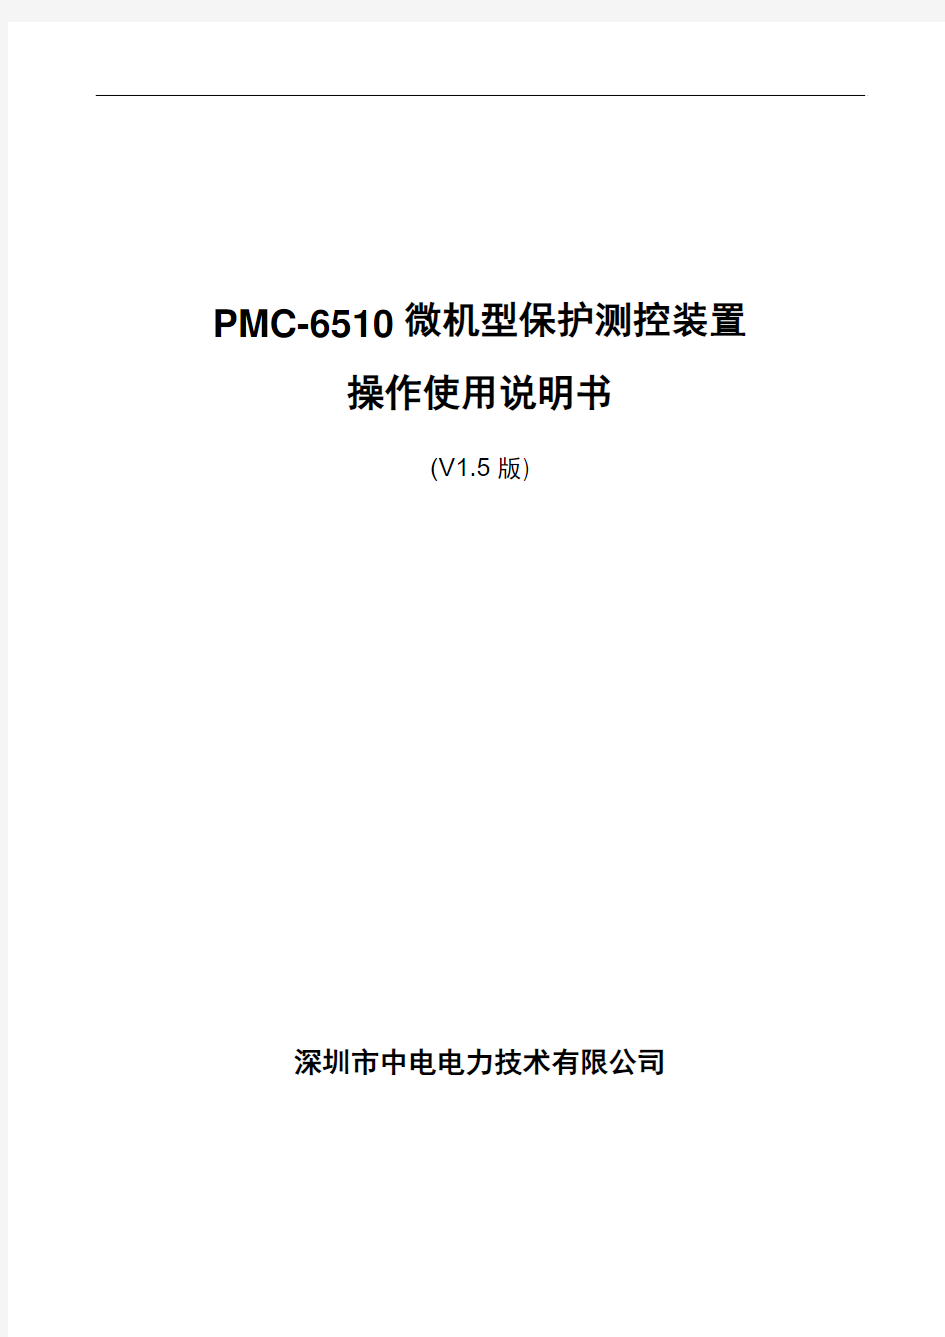 PMC-6510微机型保护测控装置使用说明书_V1.5_20100315